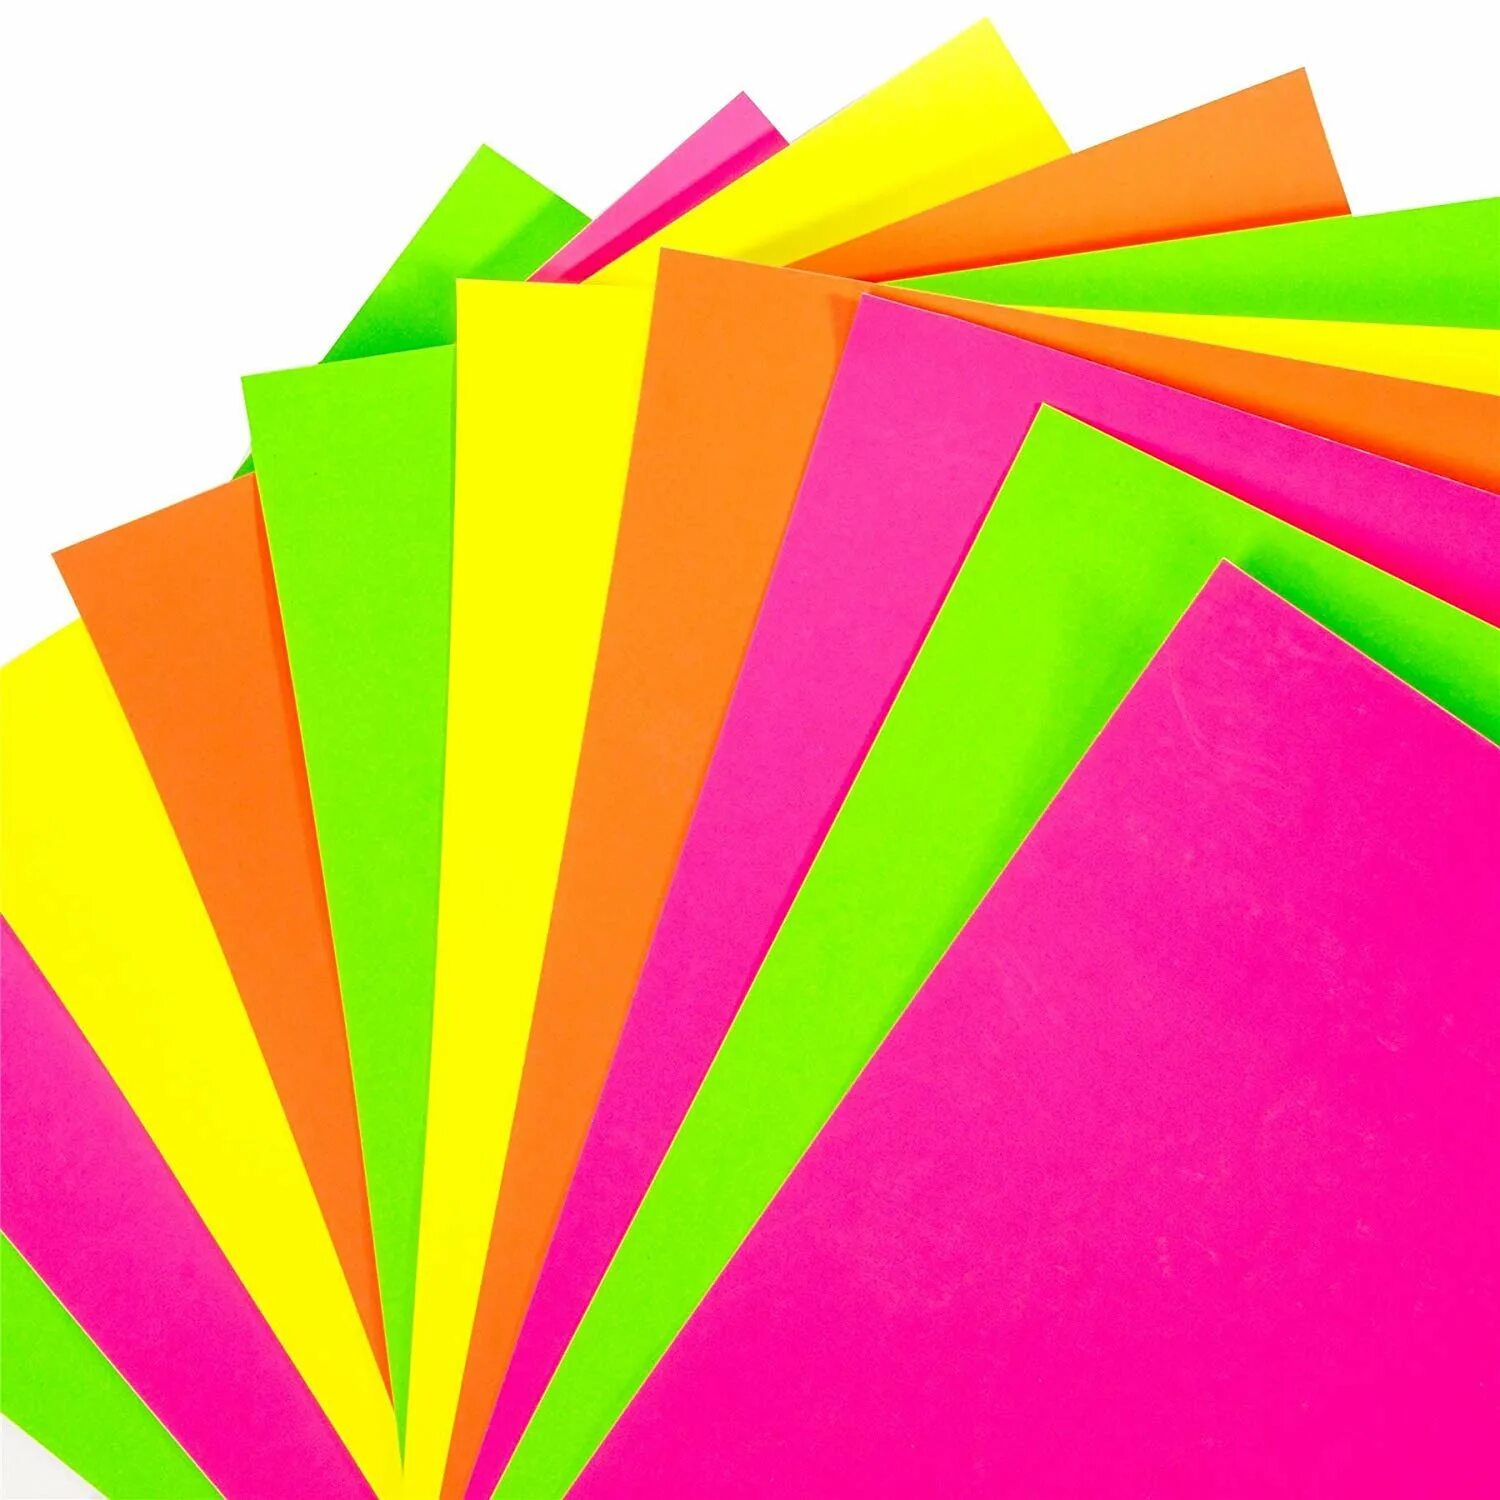 Недорогие цветные. Цветная принтерная бумага а4. Ксероксная цветная бумага а4 Леонардо. Разноцветная бумага для принтера. Цветная бумага яркая.